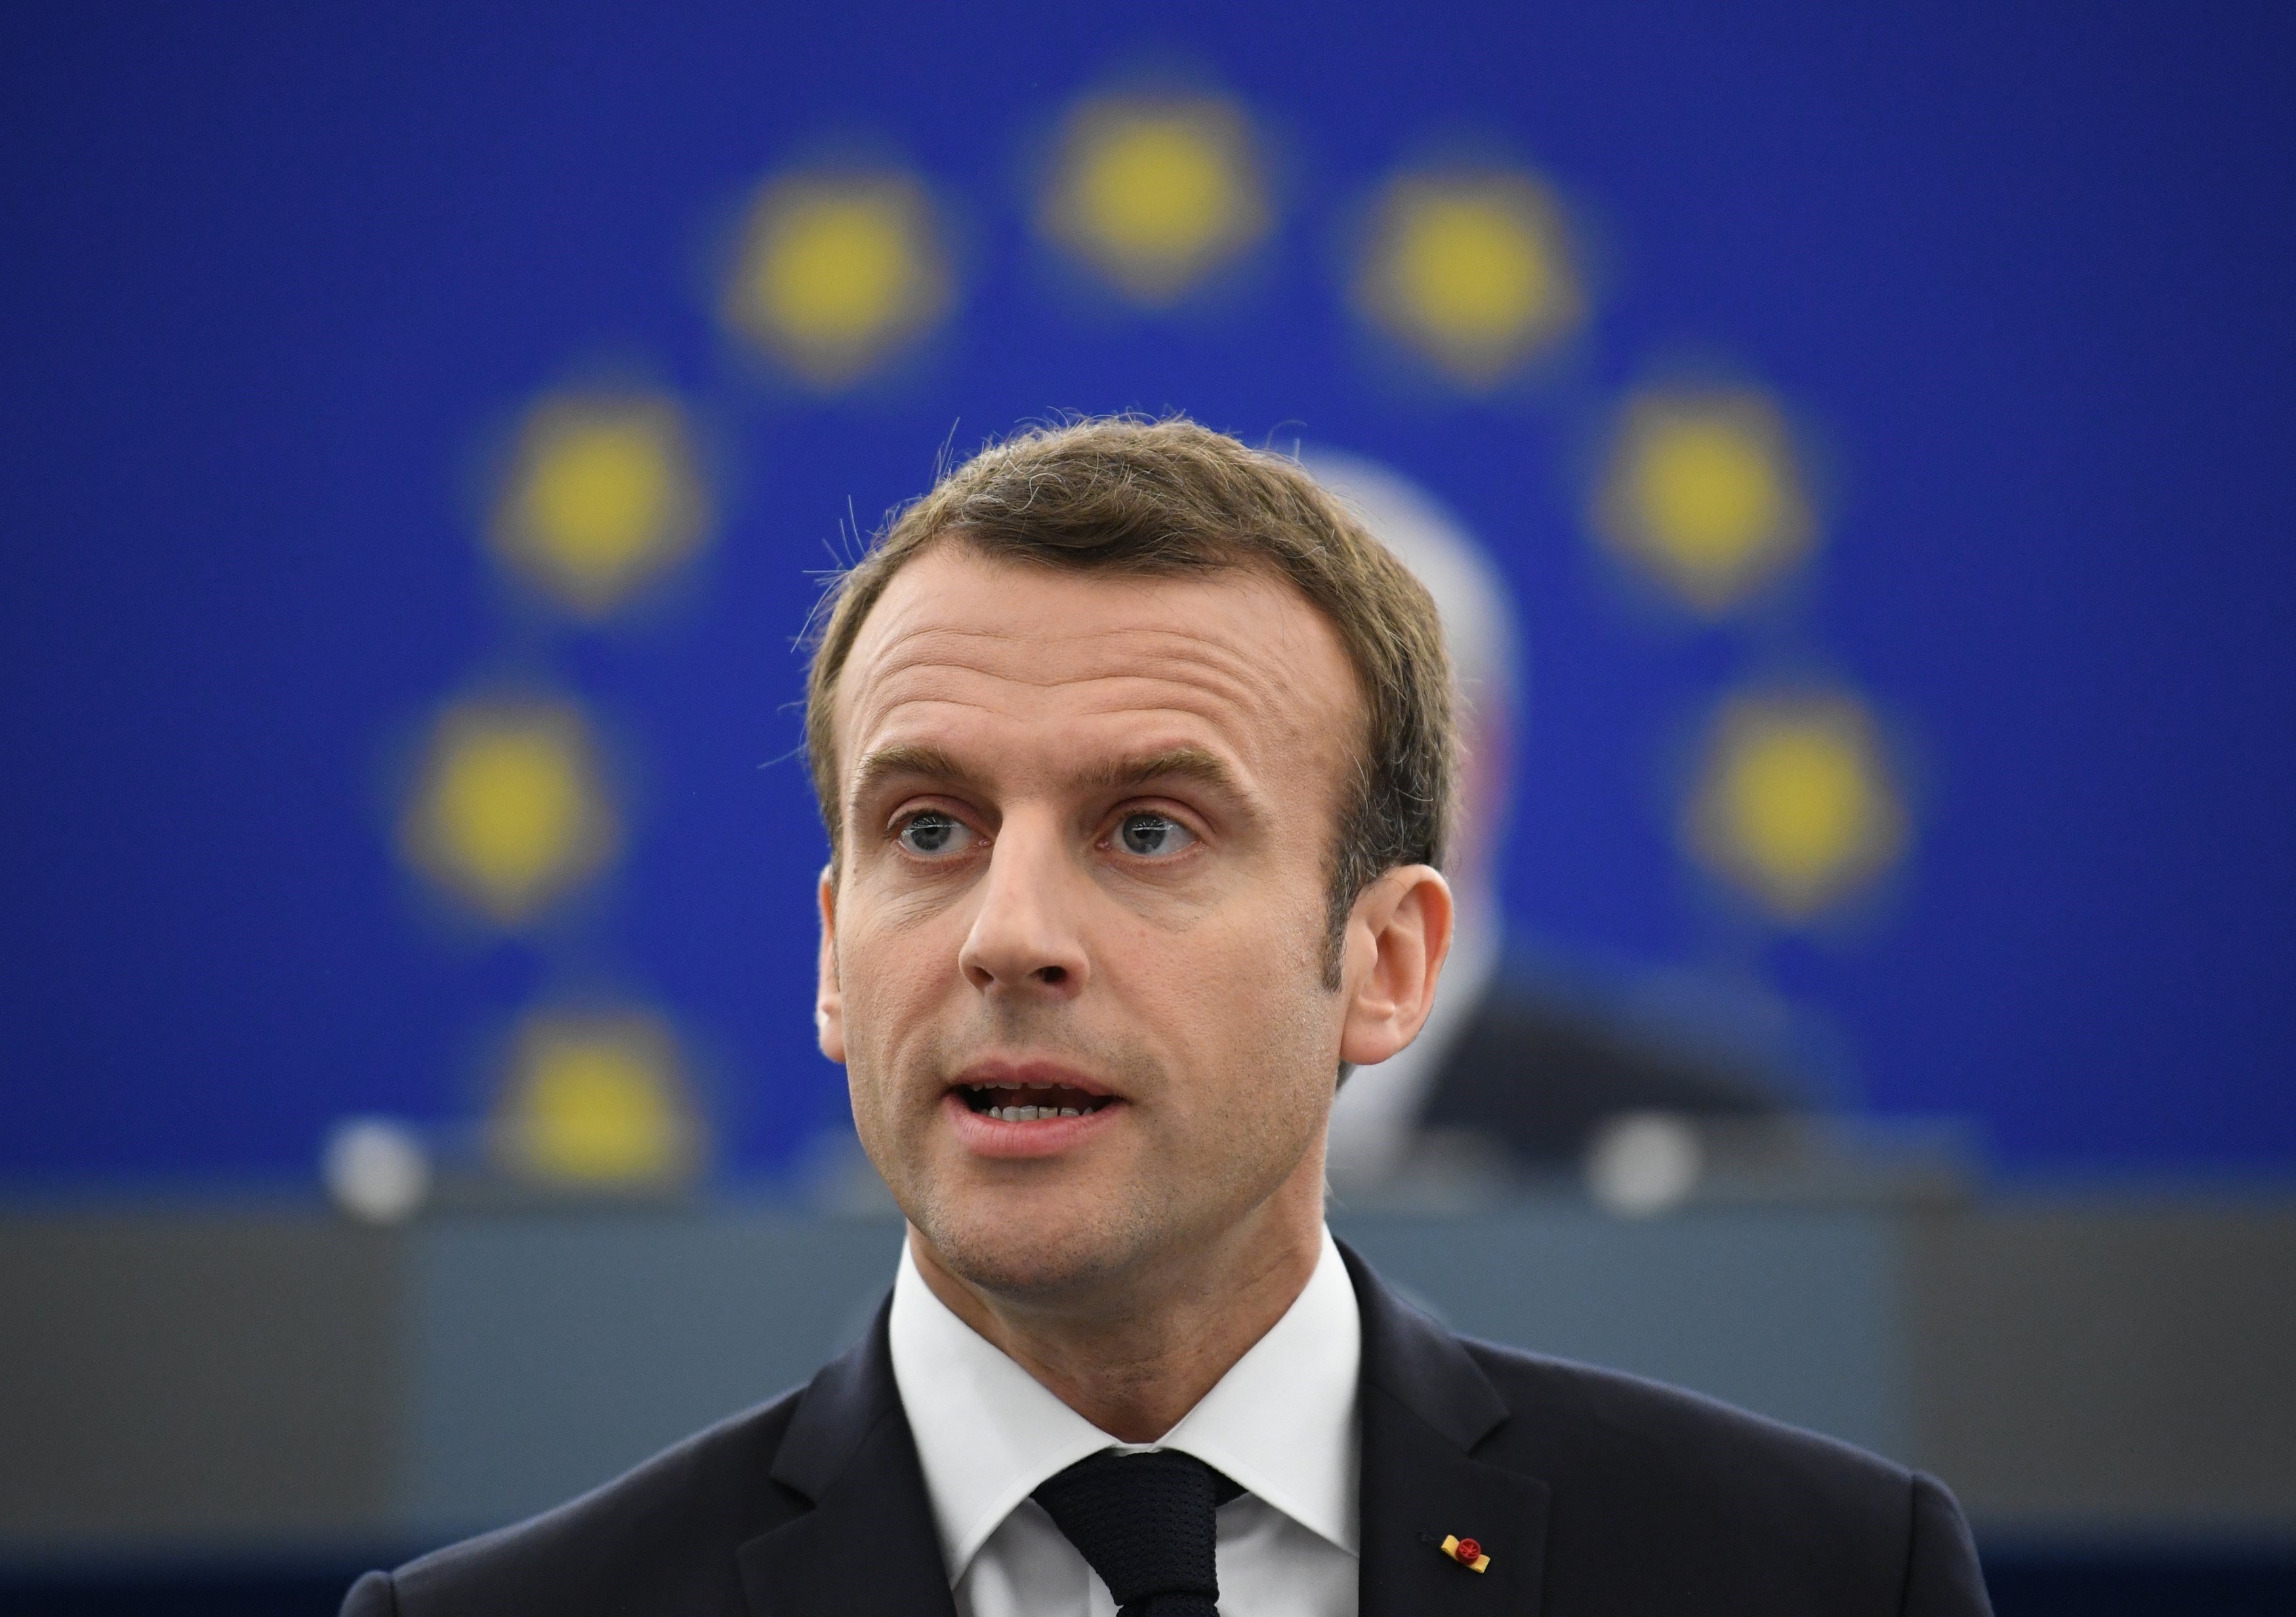 Macron demana més sobirania europea davant els “egoismes nacionalistes”